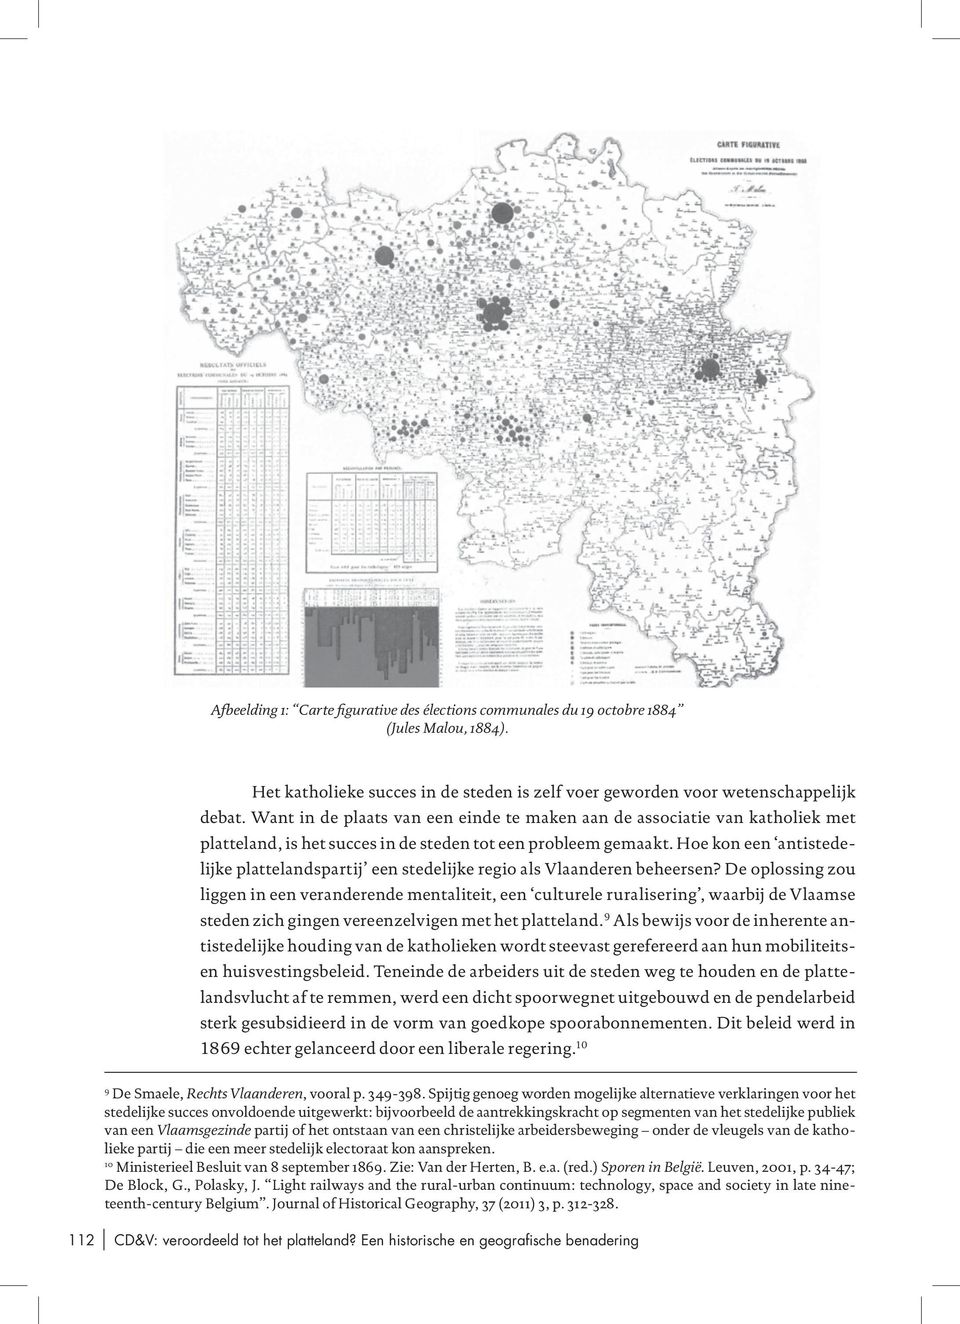 Hoe kon een antistedelijke plattelandspartij een stedelijke regio als Vlaanderen beheersen?